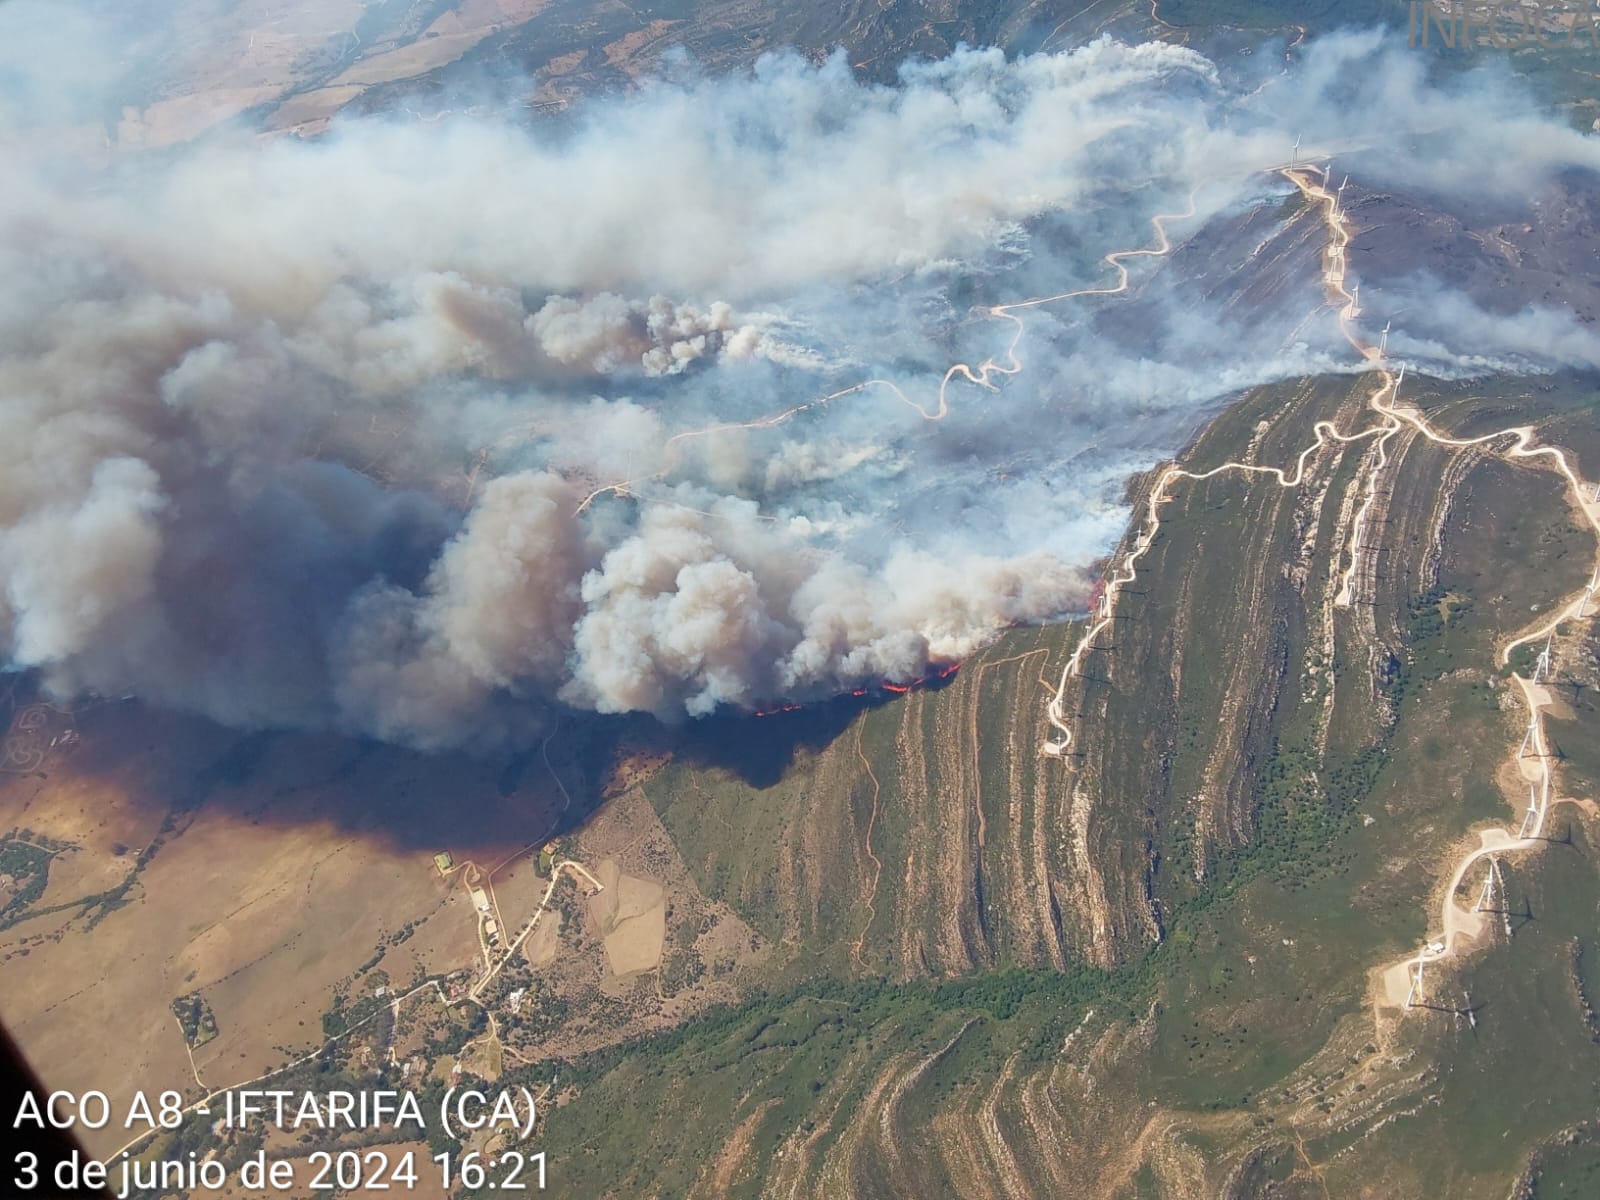 Extinguido el incendio de Tarifa declarado el pasado lunes. Foto: Infoca.